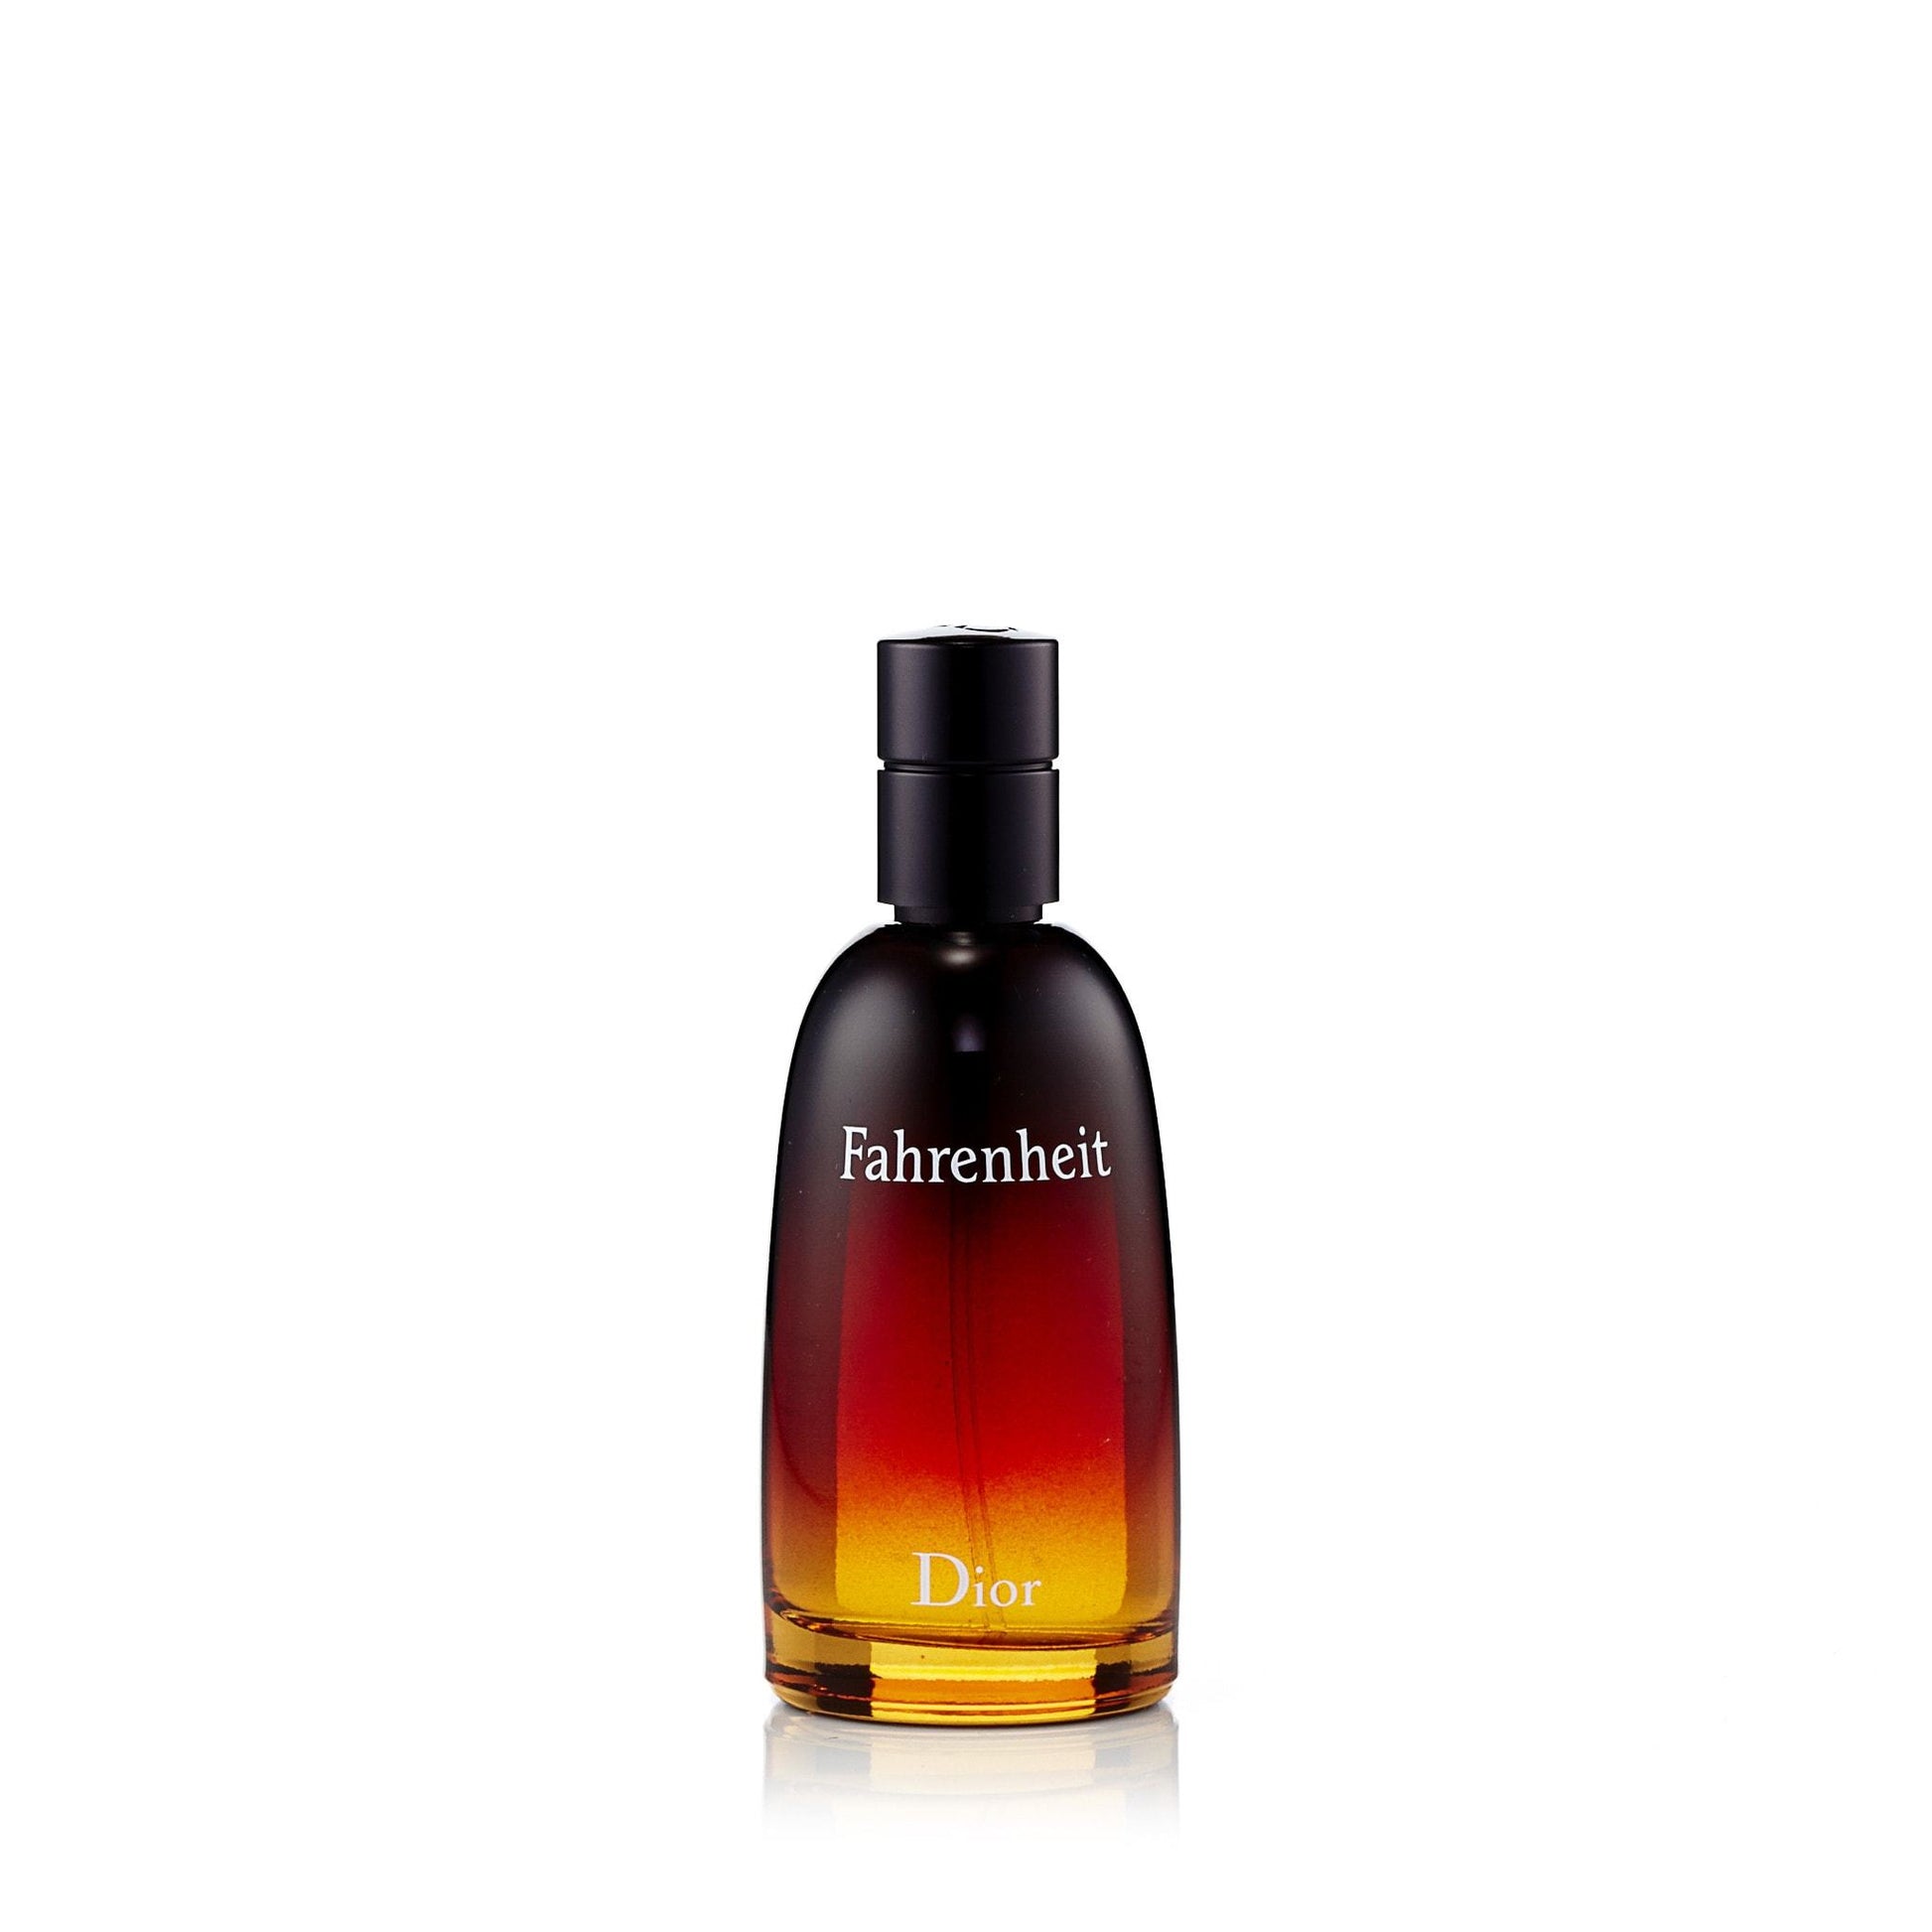 Fahrenheit Eau de Toilette Spray for Men by Dior, Product image 2